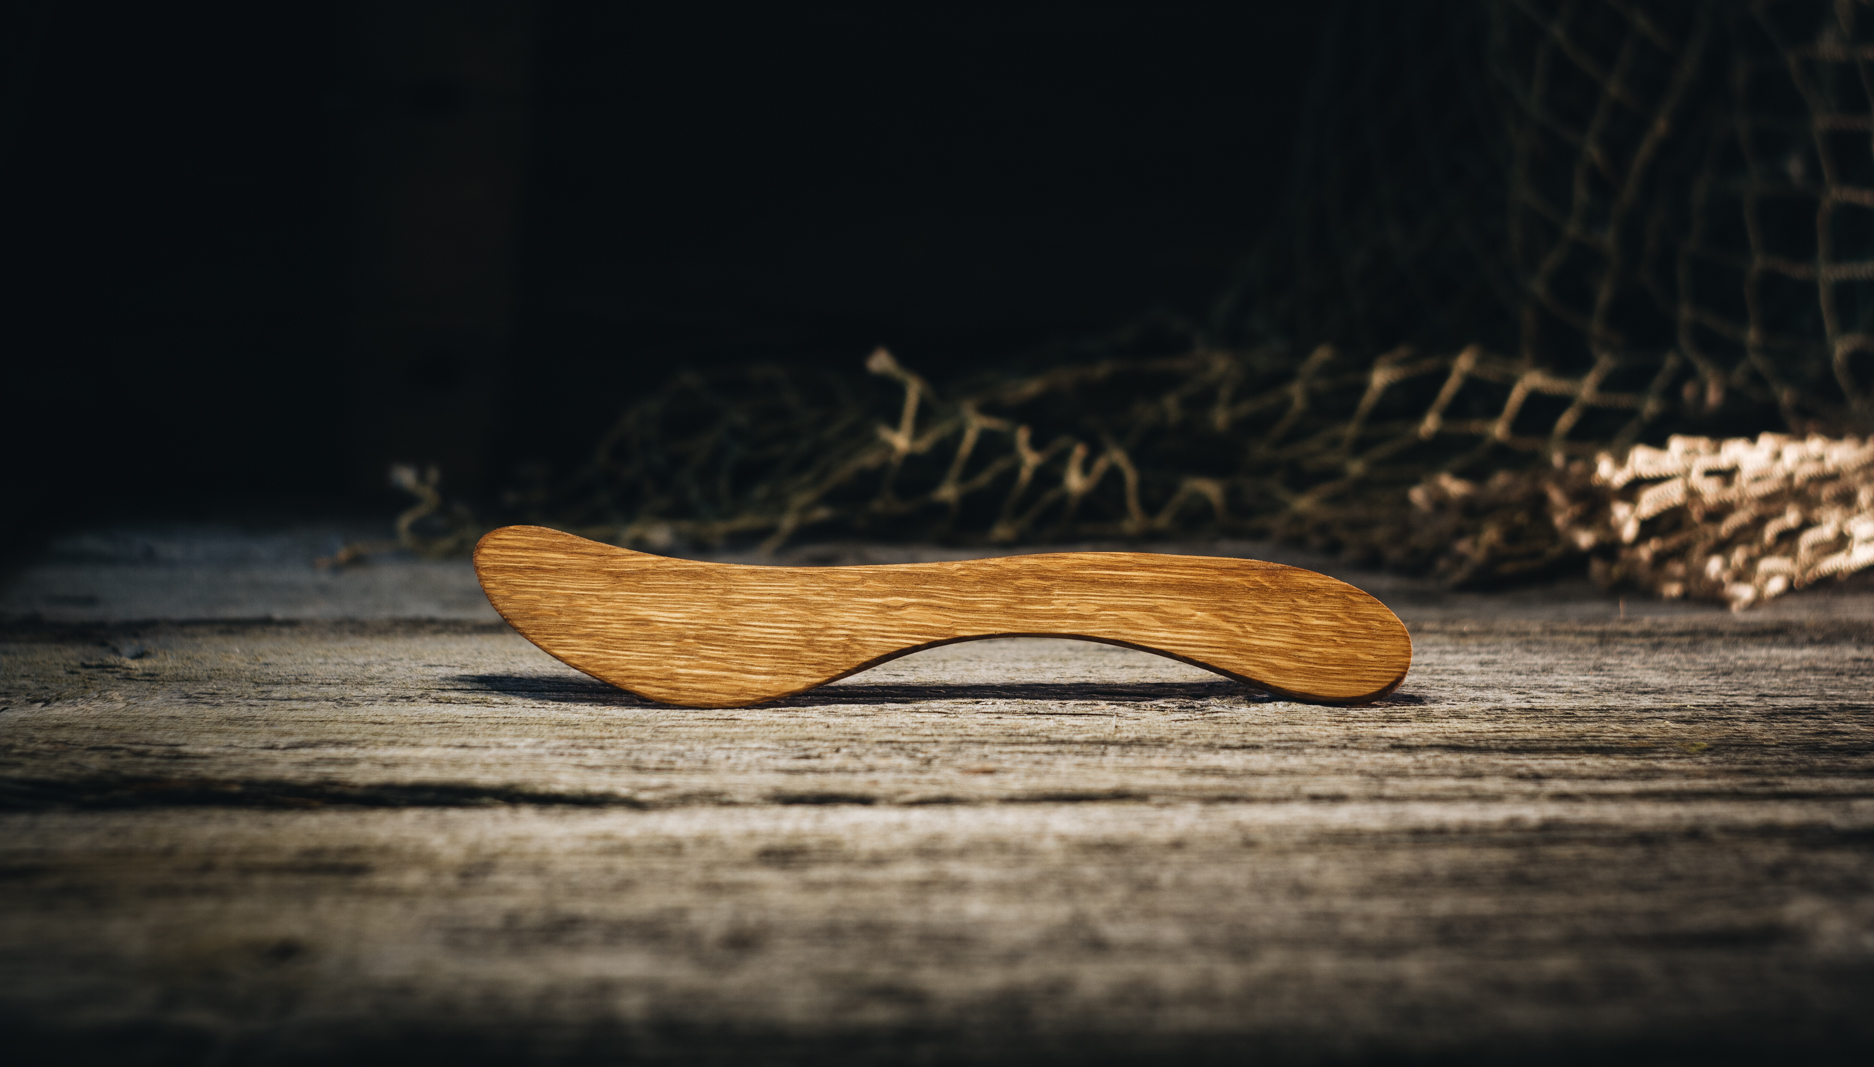 Võinuga (tamm)/ Butter knife (oak) 170 mm